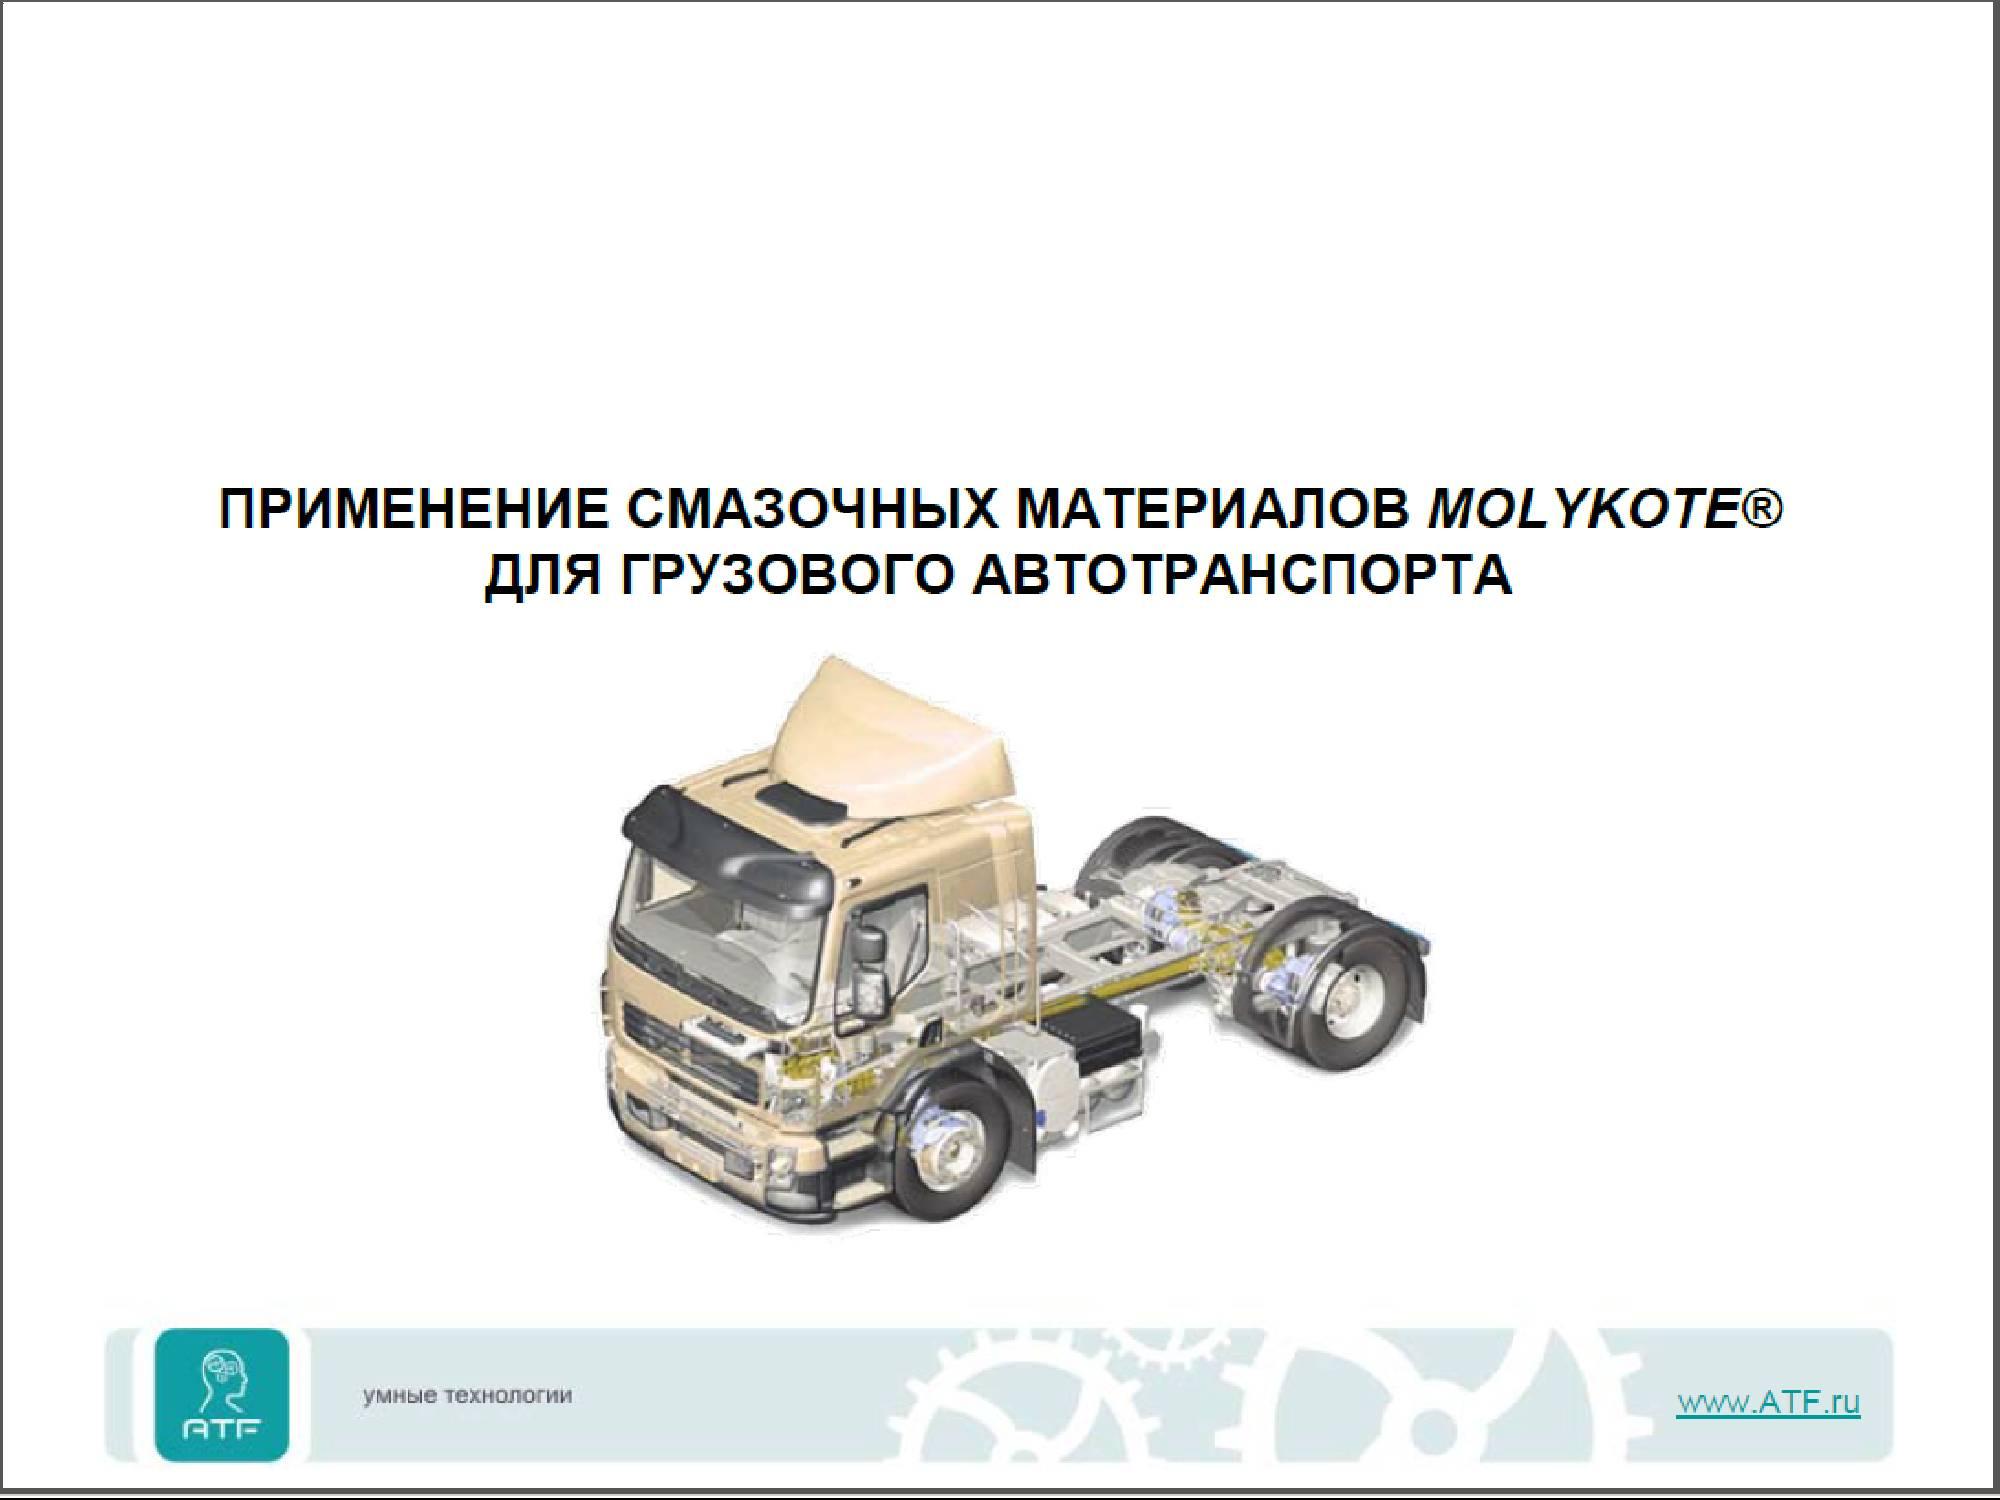 Применение смазочных материалов Molykote для грузового транспорта